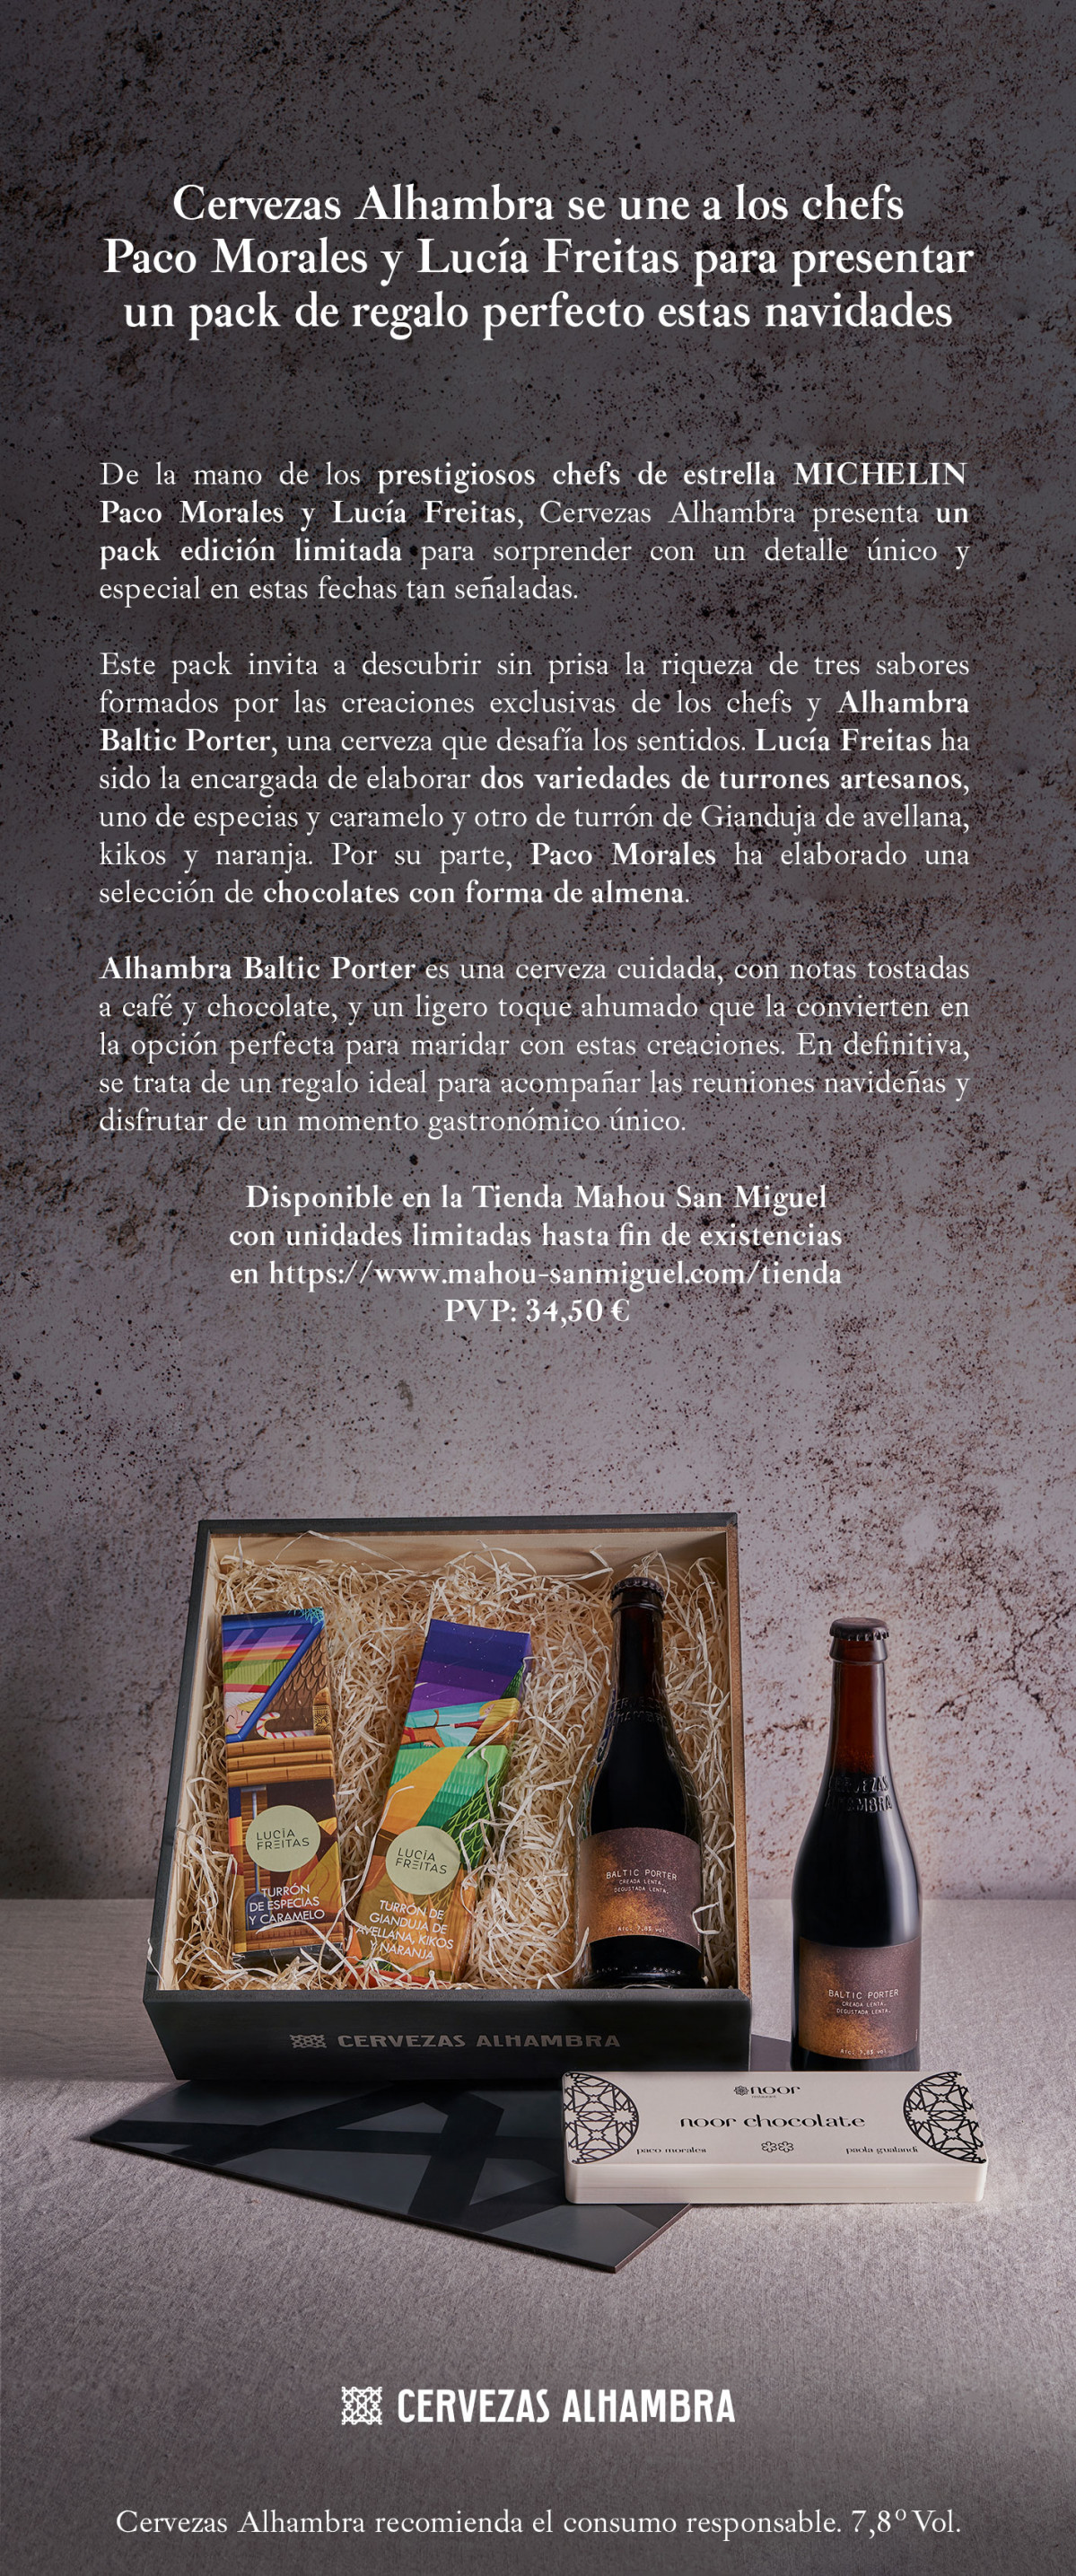 Lucía Freitas y Morales se unen a Cervezas Alhambra presentar un pack de perfecto estas navidades